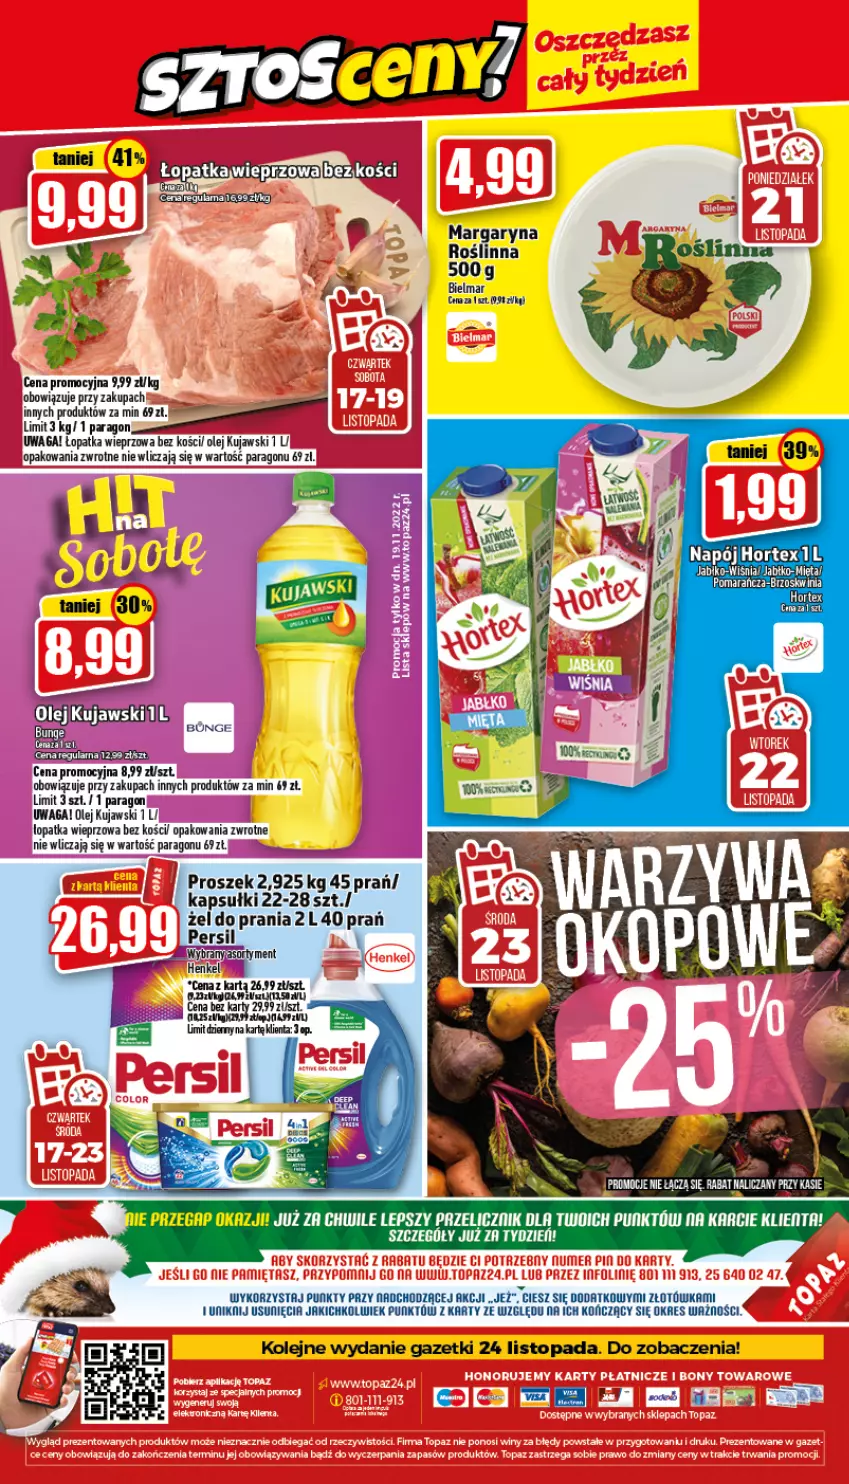 Gazetka promocyjna Topaz - Gazetka - ważna 17.11 do 23.11.2022 - strona 24 - produkty: Hortex, Kujawski, Mięta, Napój, Olej, Persil, Top, Waga